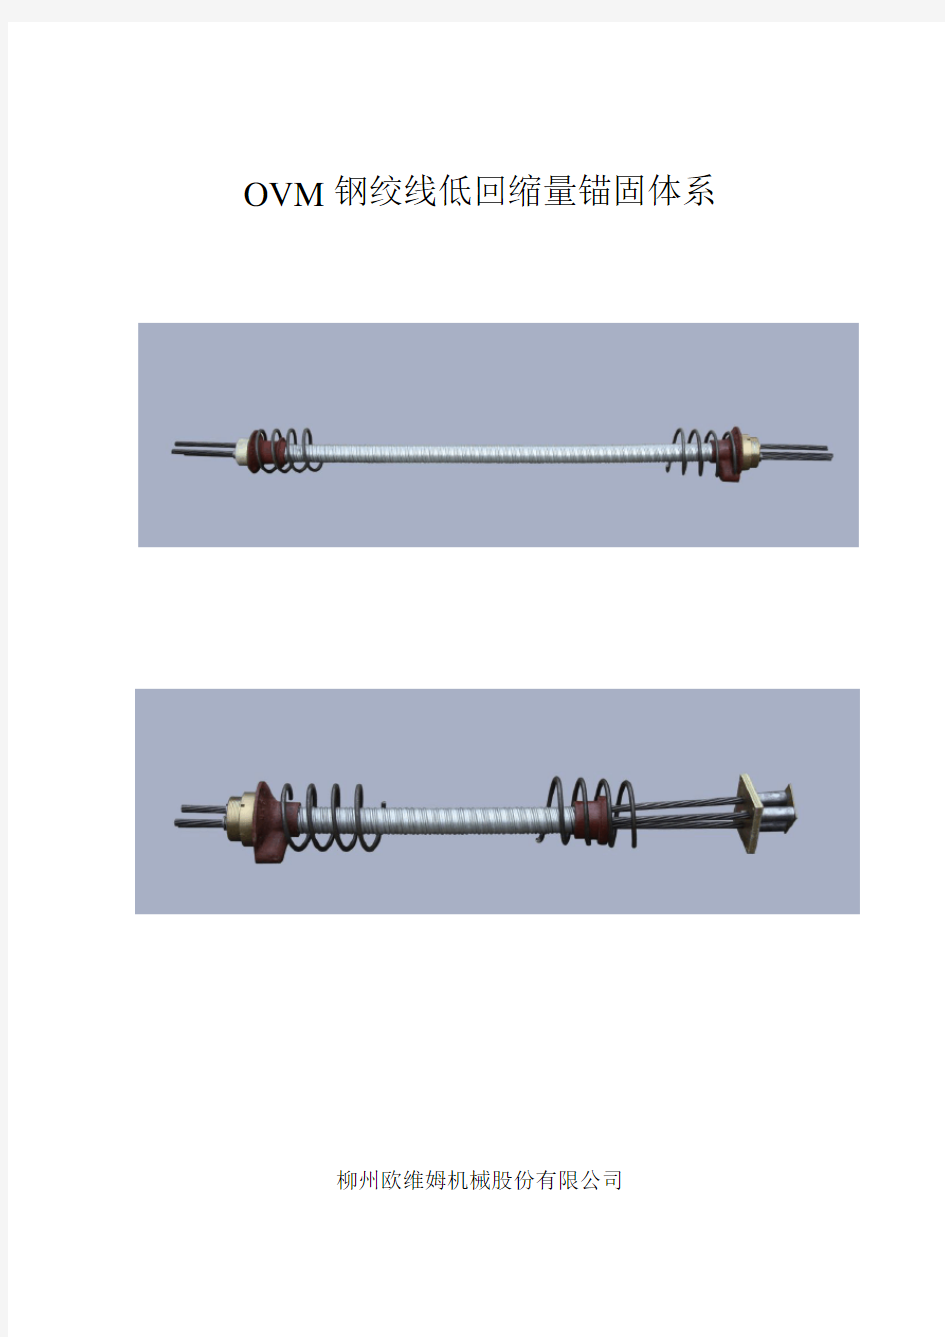 (完整版)预应力钢绞线低回缩量锚固体系工作机理锚具附图及参数